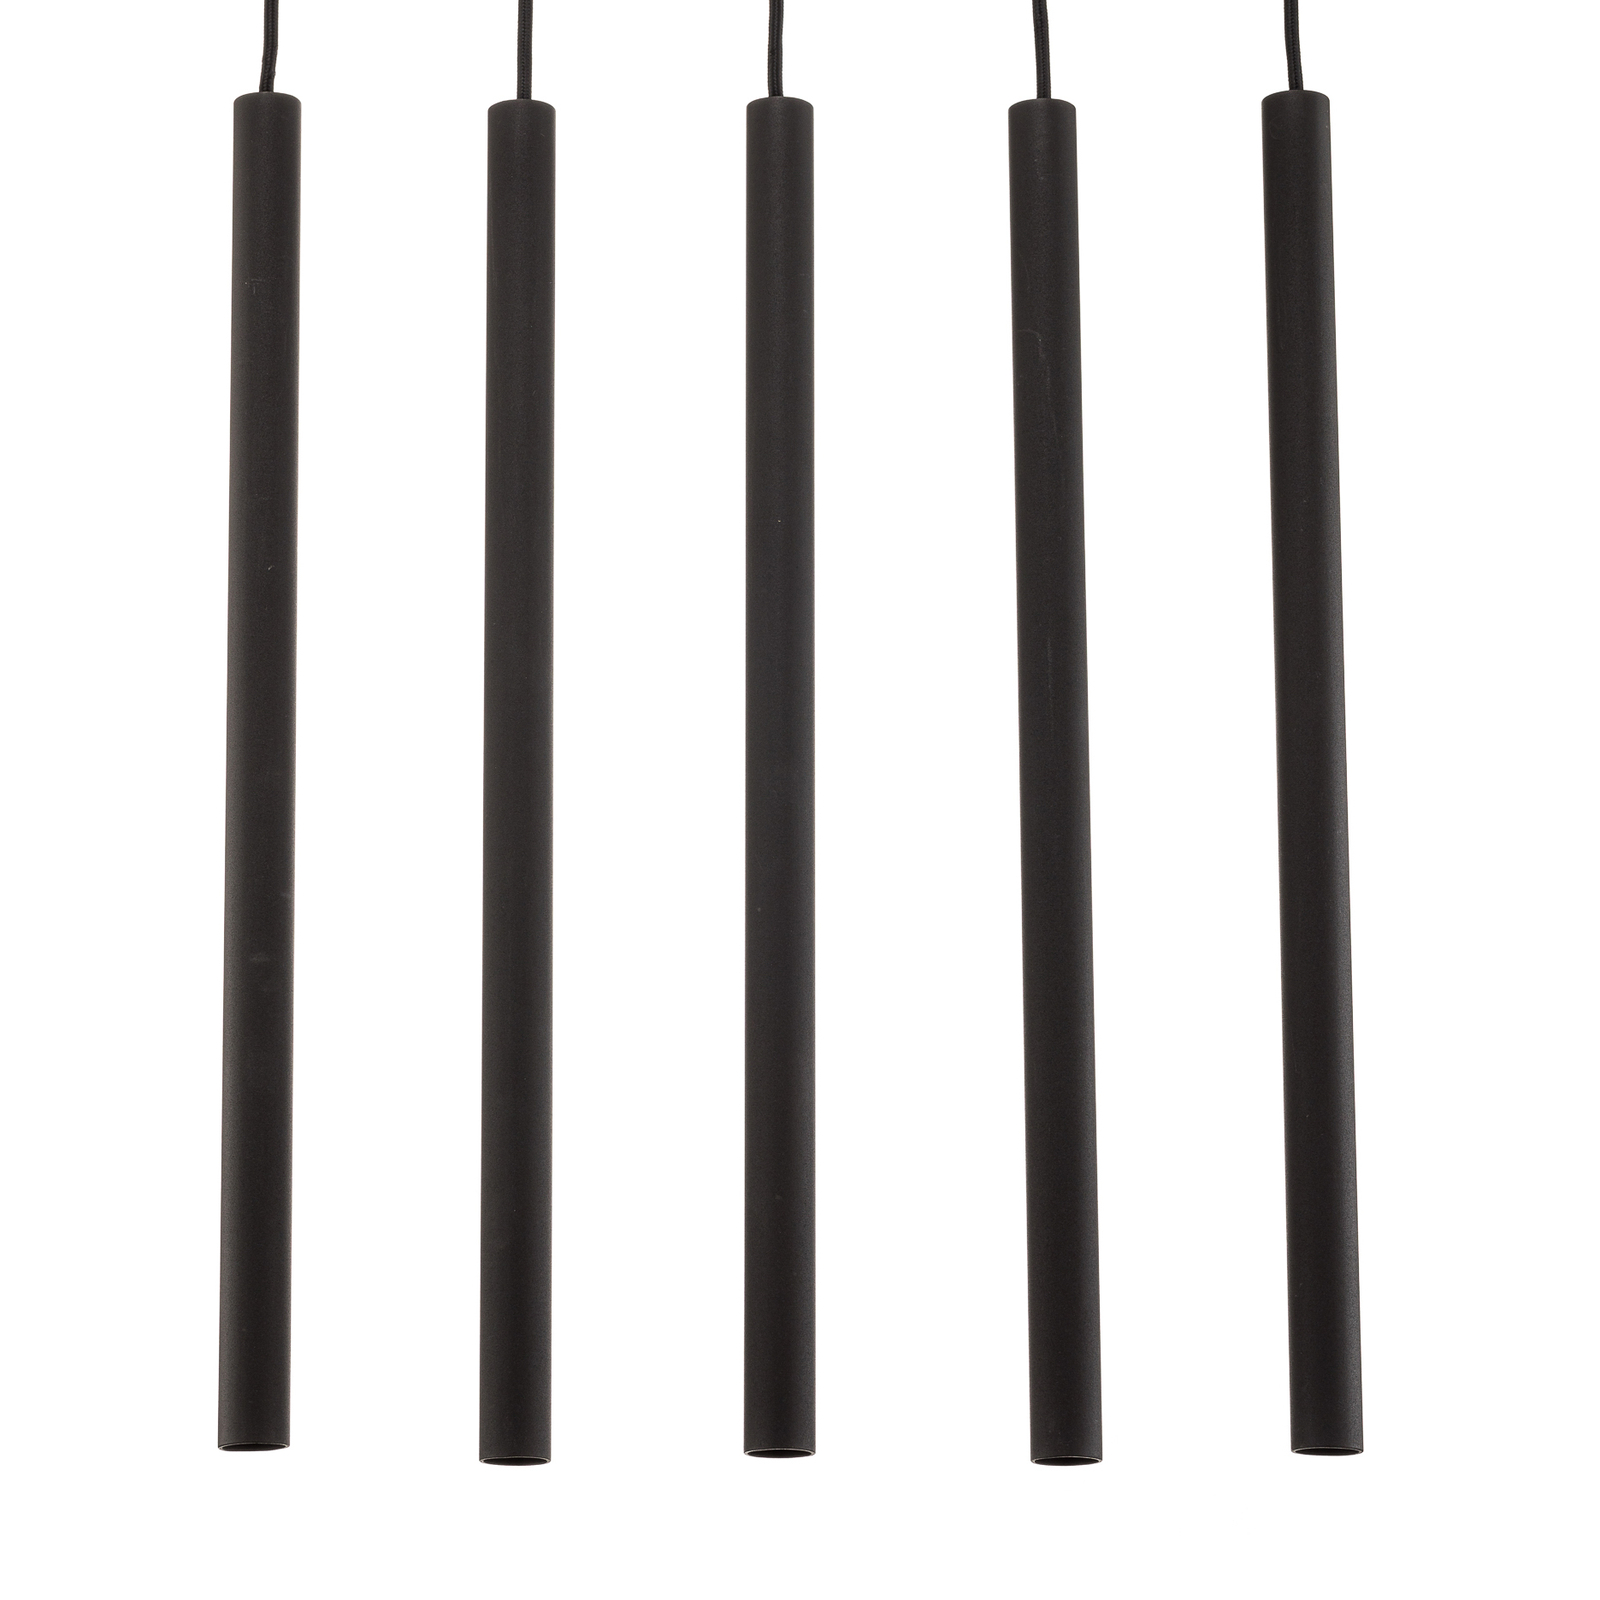 Thin pendant light, black, 5-bulb, linear